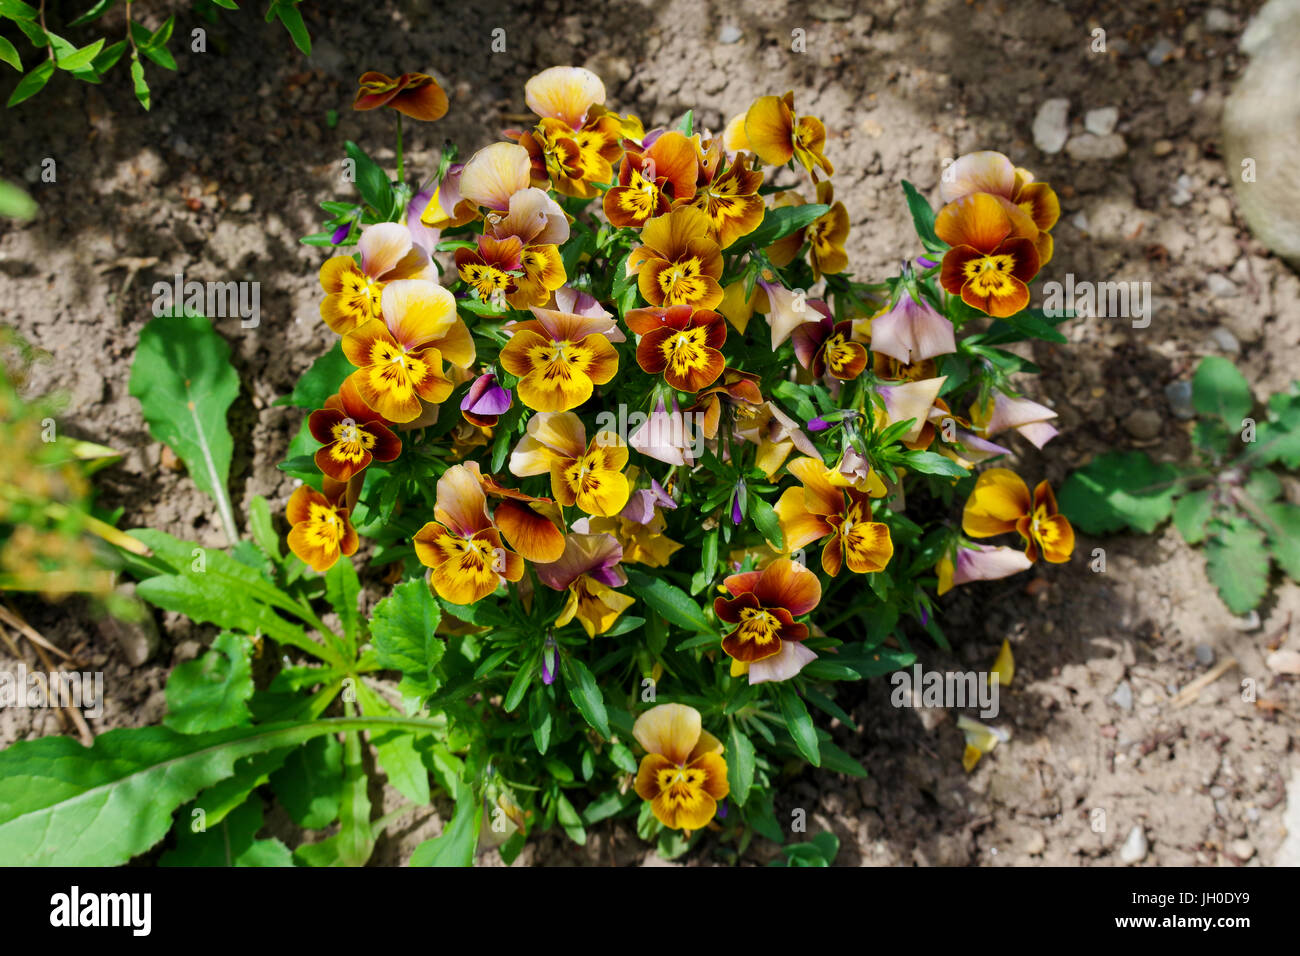 El jardín pansy es un tipo de flor grande planta híbrida cultivada como un jardín de flores Foto de stock